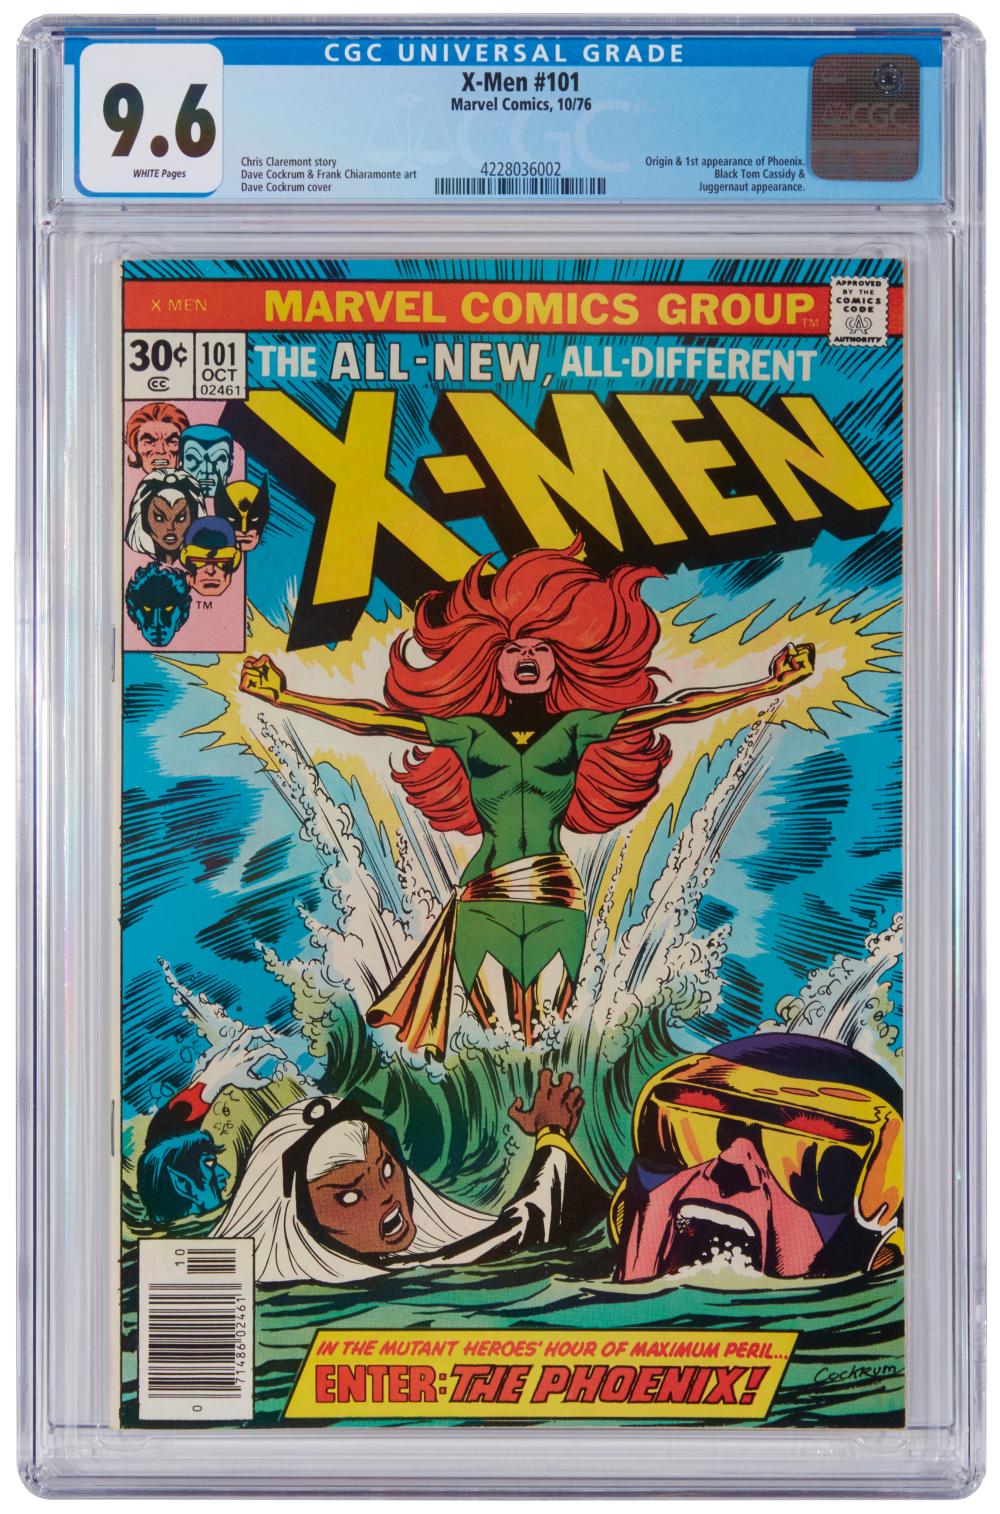 X-MEN #101 (MARVEL COMICS, 1976)X-Men